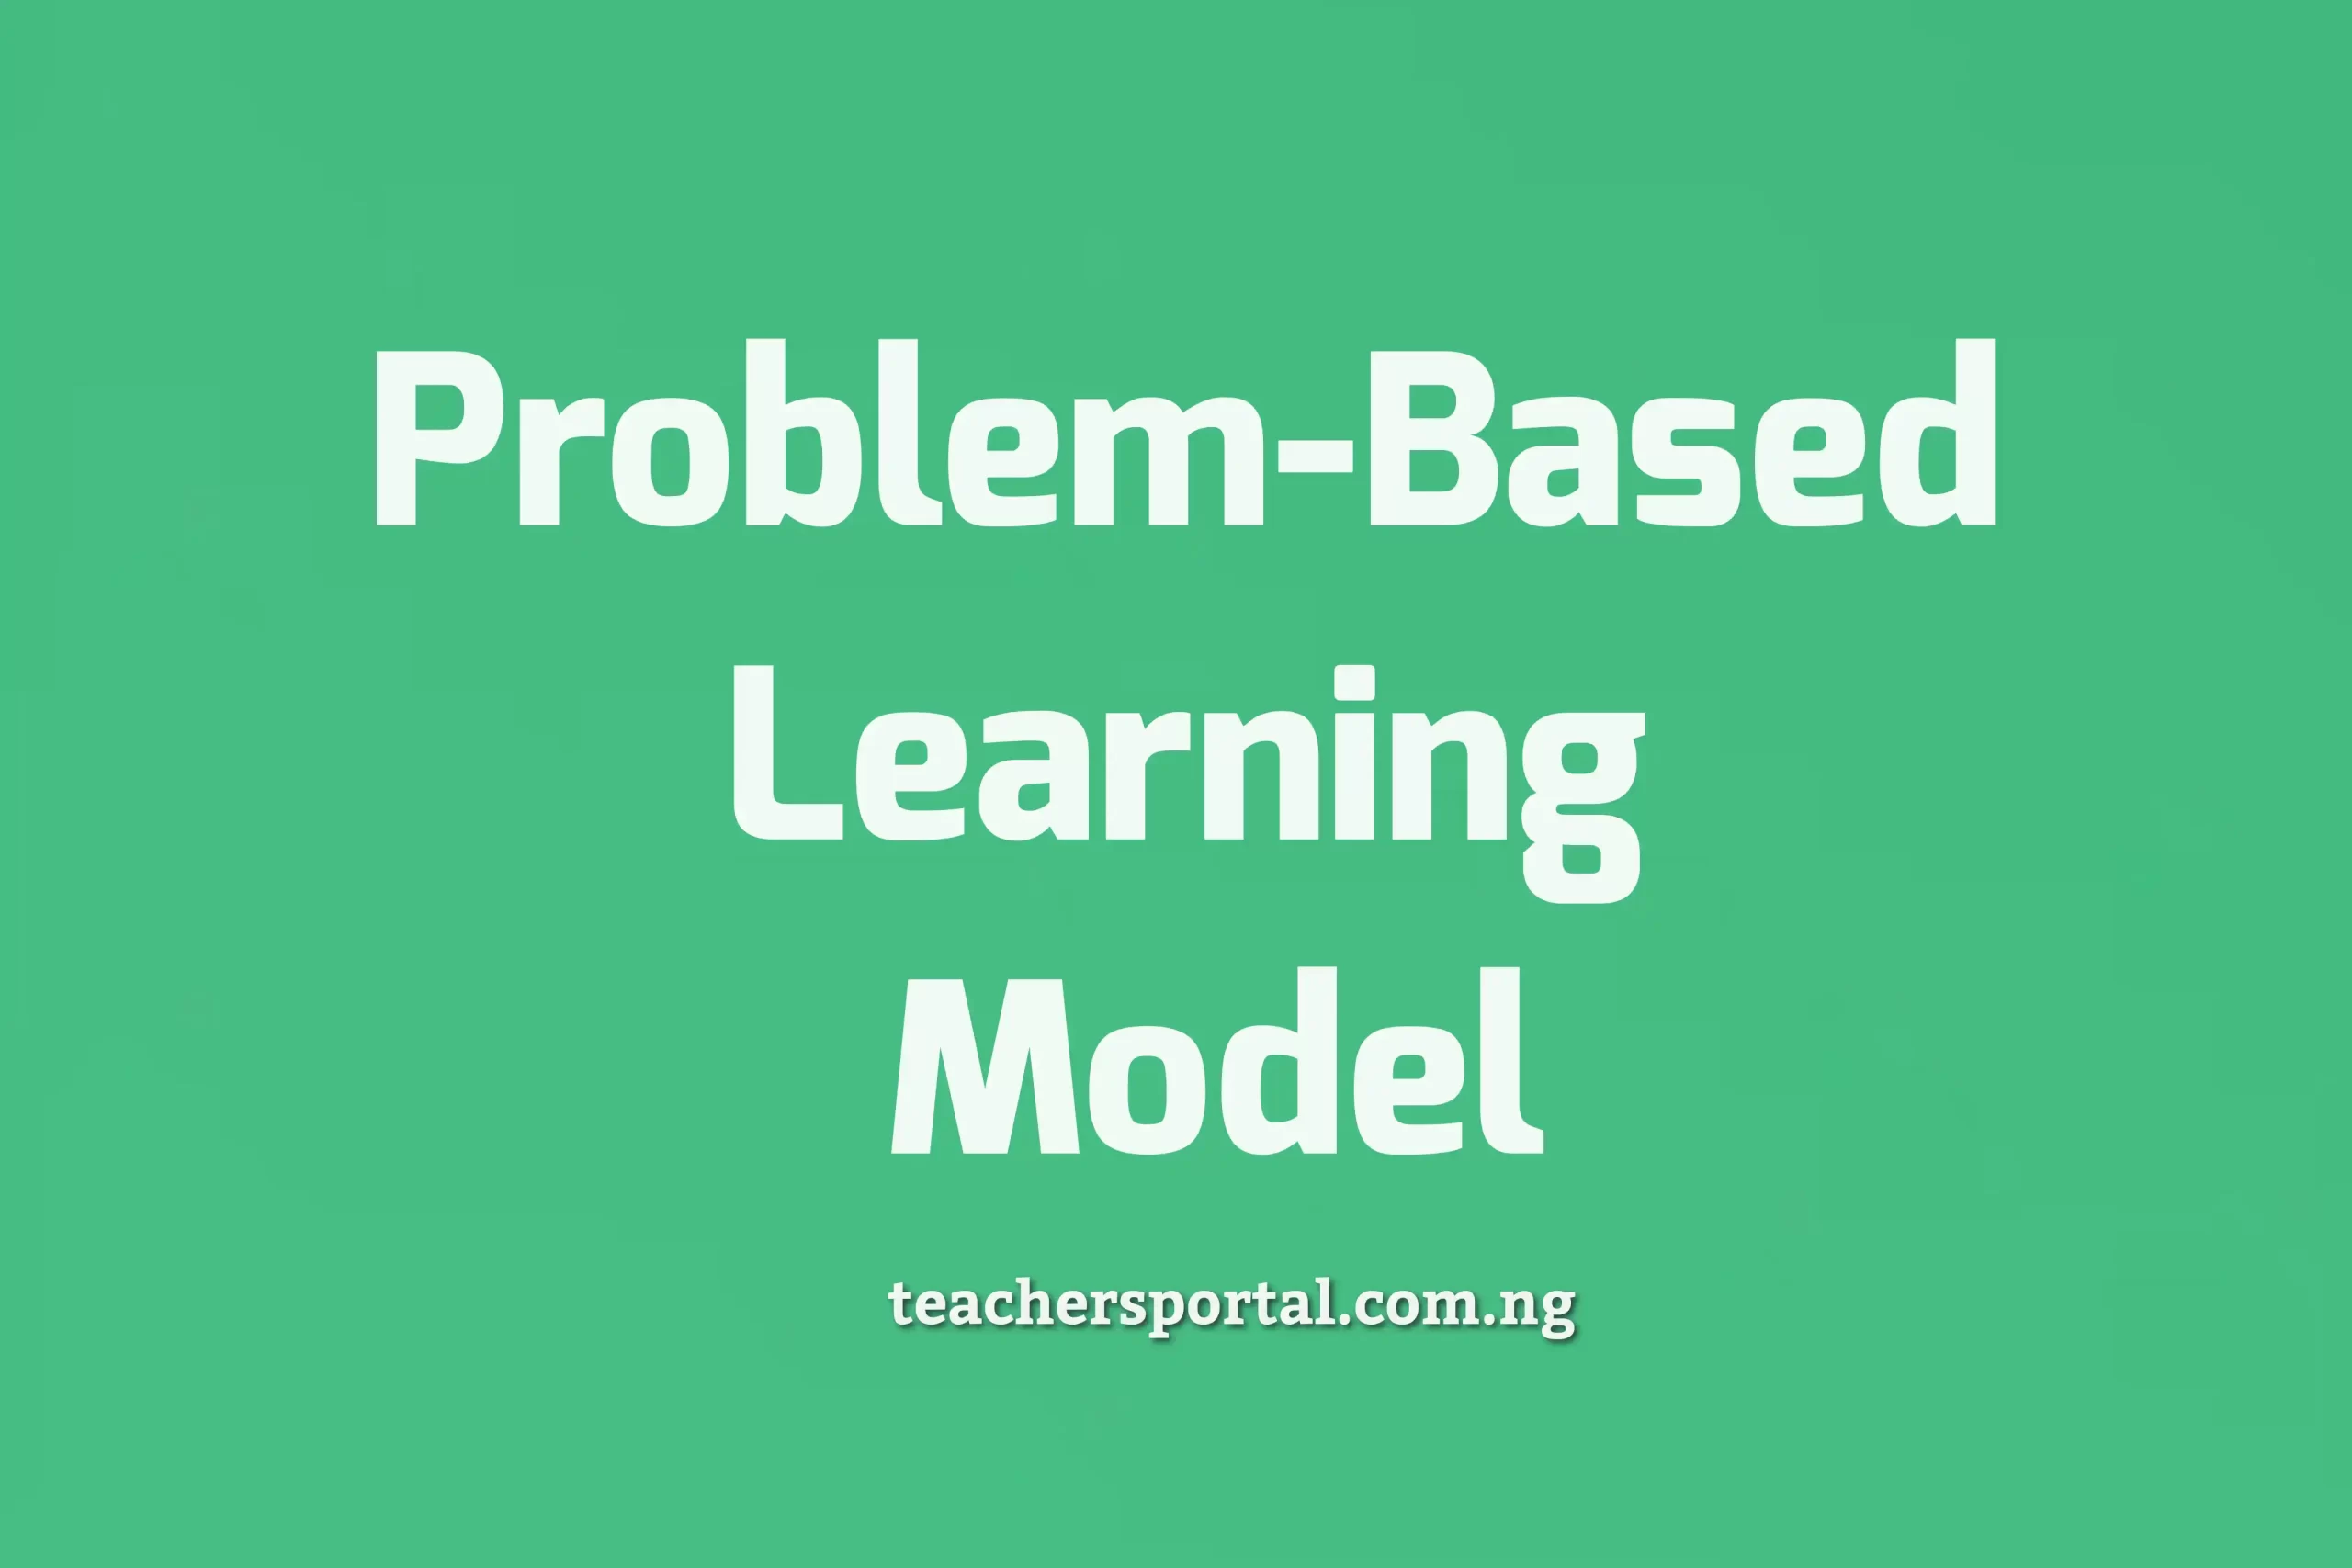 Problem-Based Learning Model